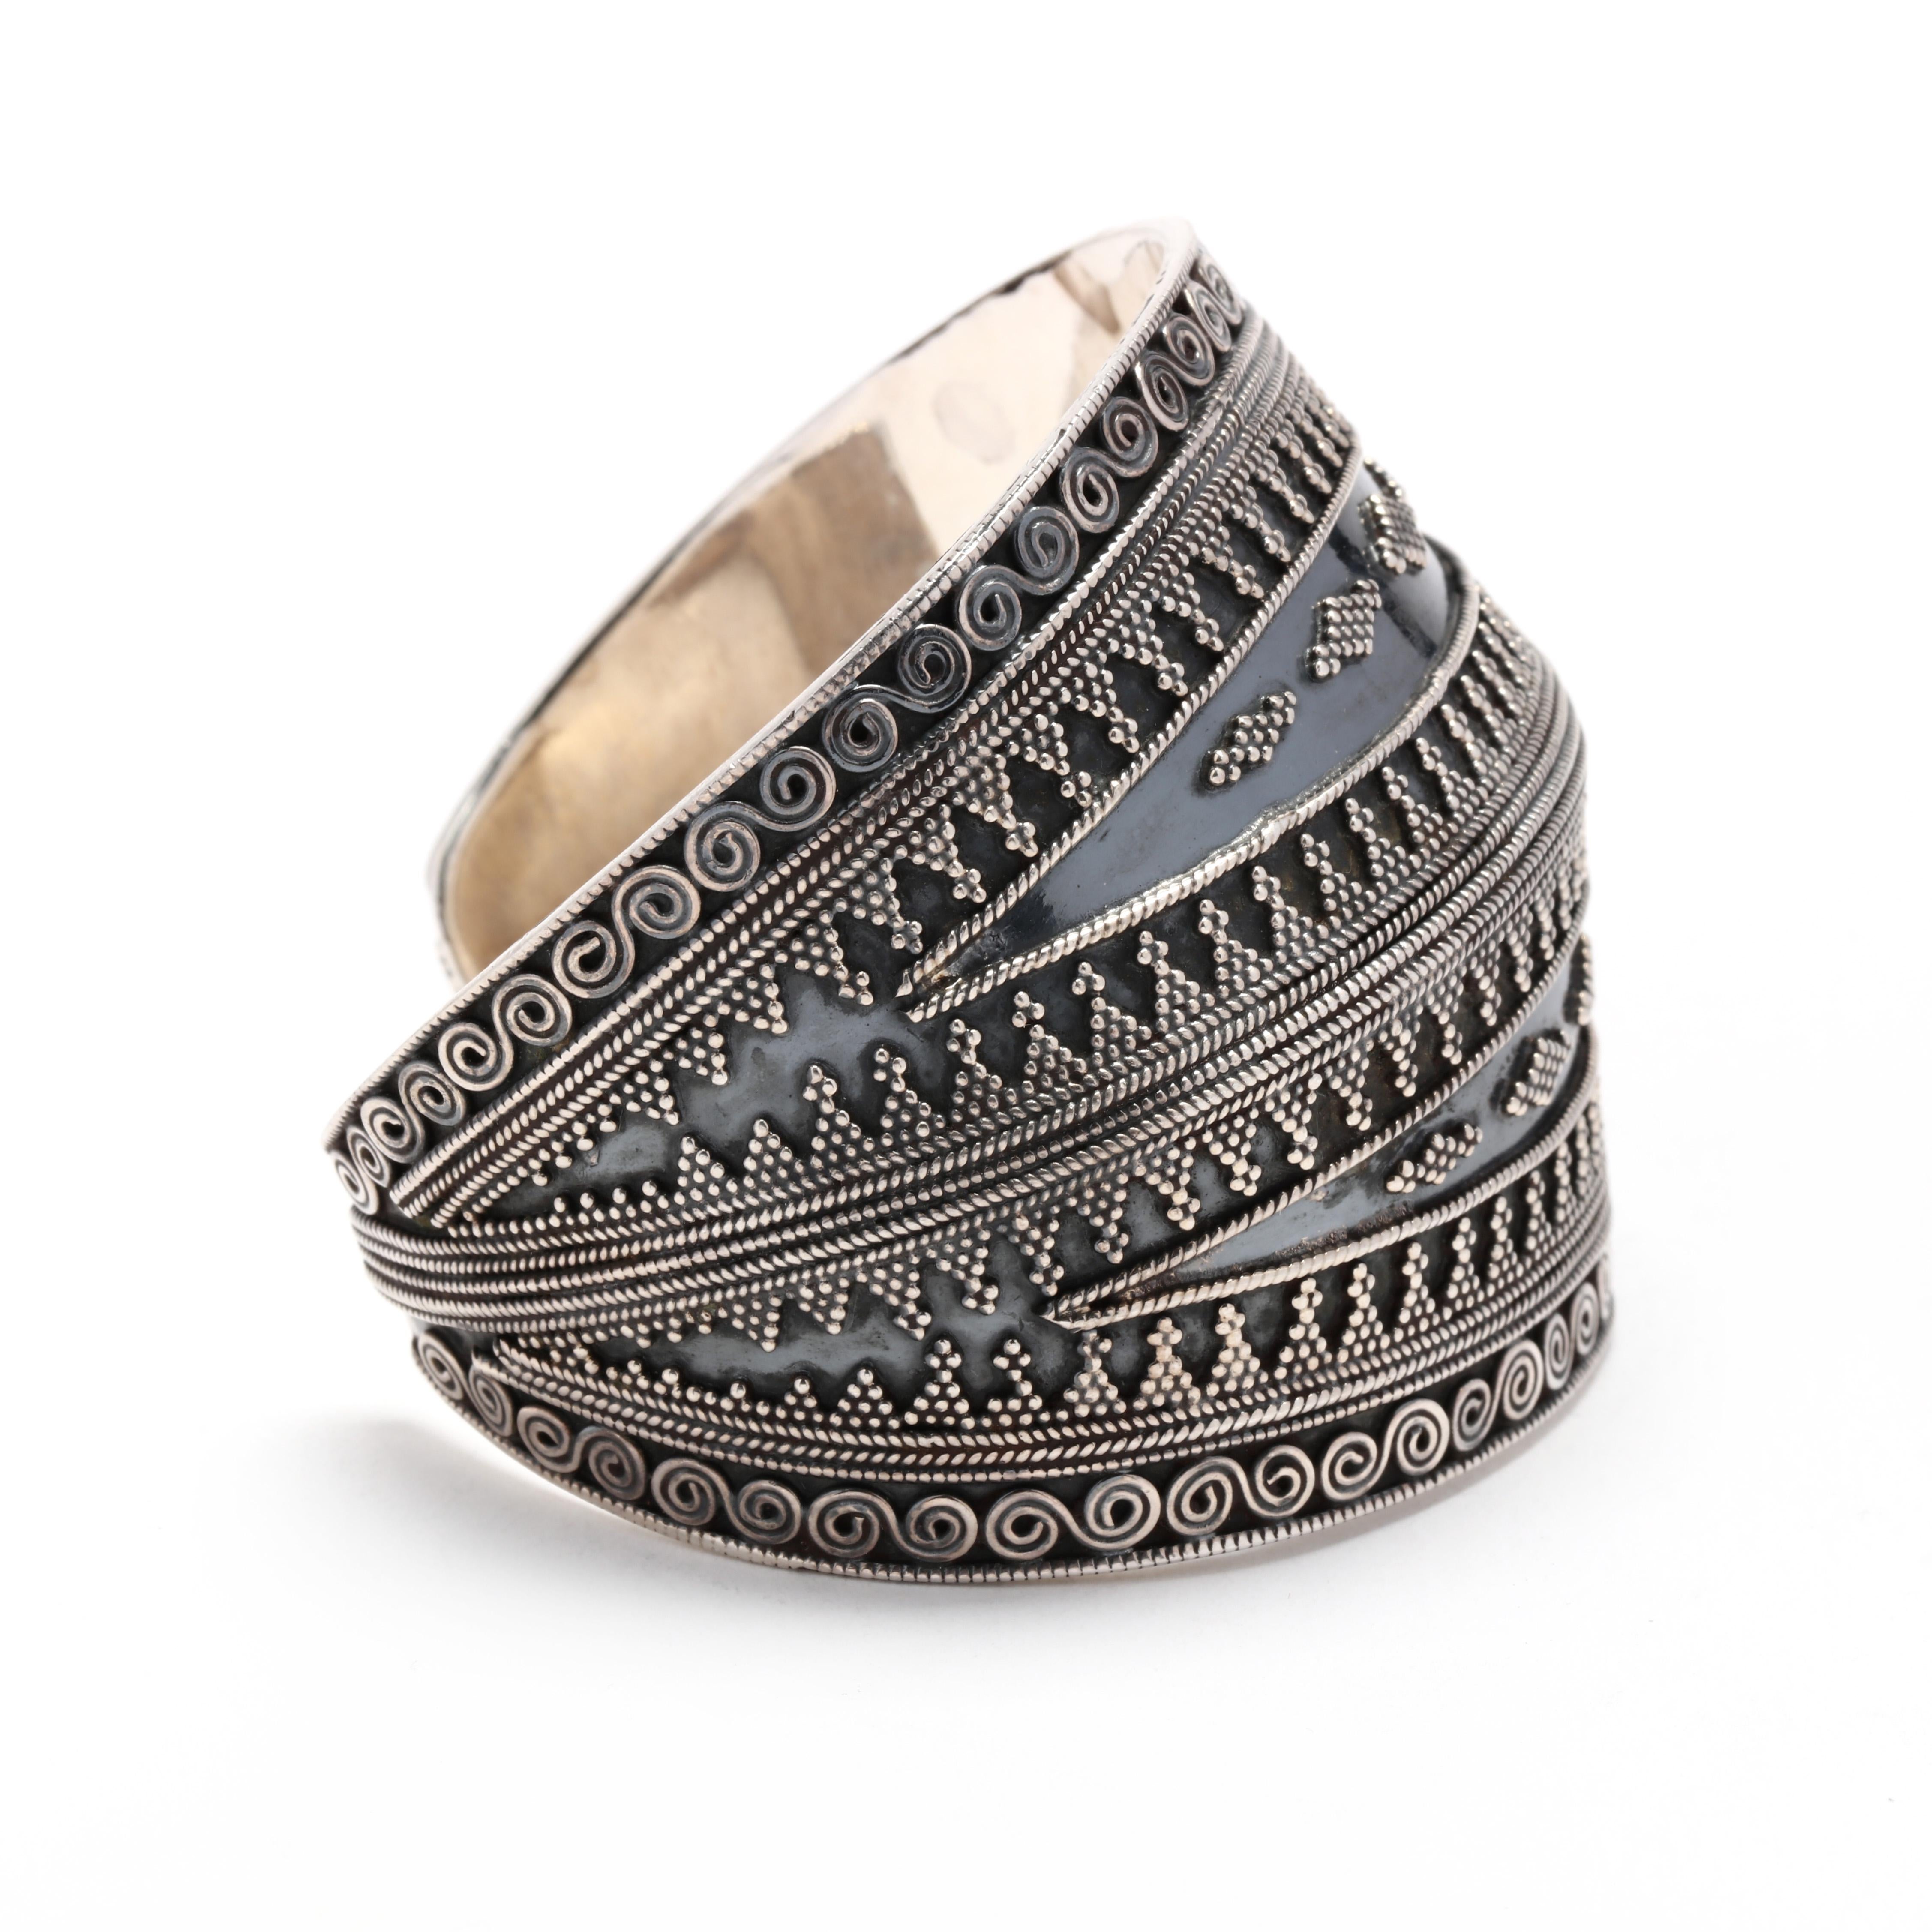 Ein breites Armband aus Sterlingsilber mit Perlen im Tribal-Stil.  Dieses Armband zeigt ein appliziertes Motiv im Tribal-Stil mit Perlen- und Spiraldekoration und einem erhöhten Grat in der Mitte.   Die breite Vorderseite verjüngt sich nach hinten,